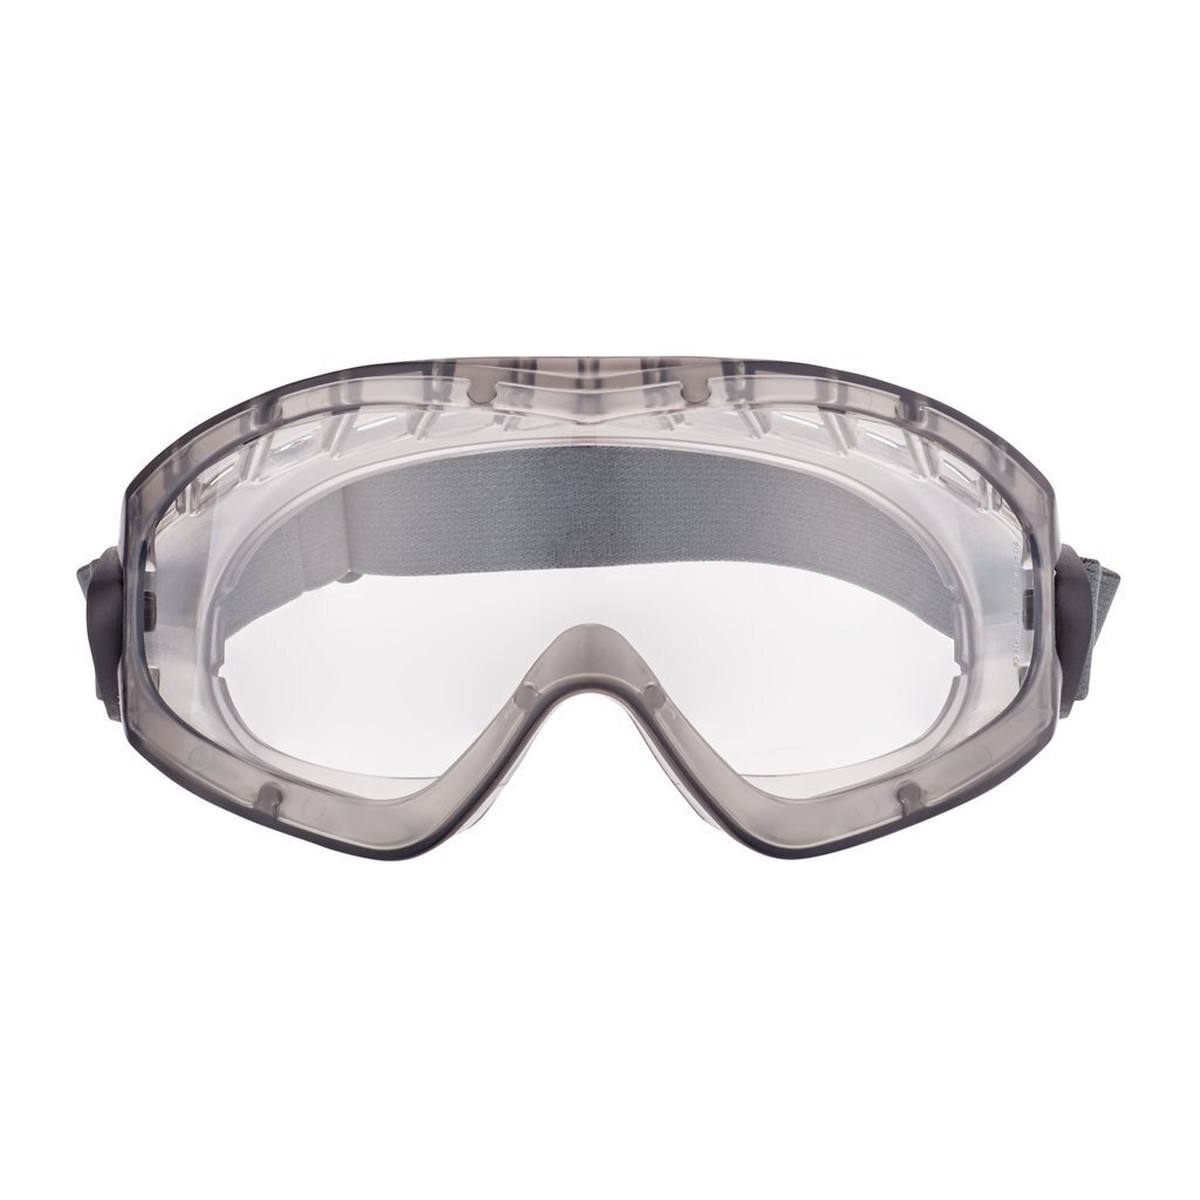 3M 2891-SGAF Gafas de visión total, con ranura de ventilación, bisagras ajustables, revestimiento antivaho